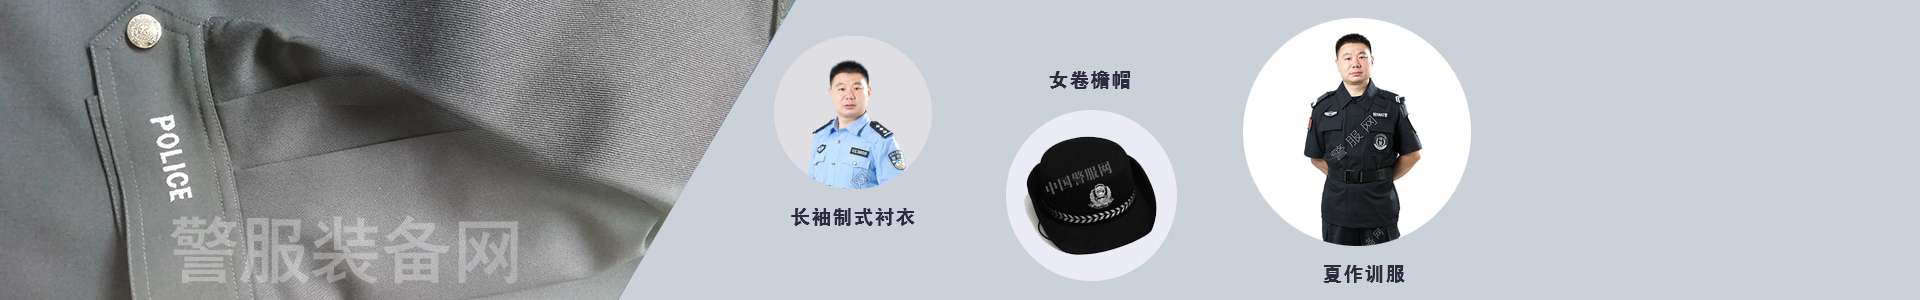 人民警察服装专卖网站警服网